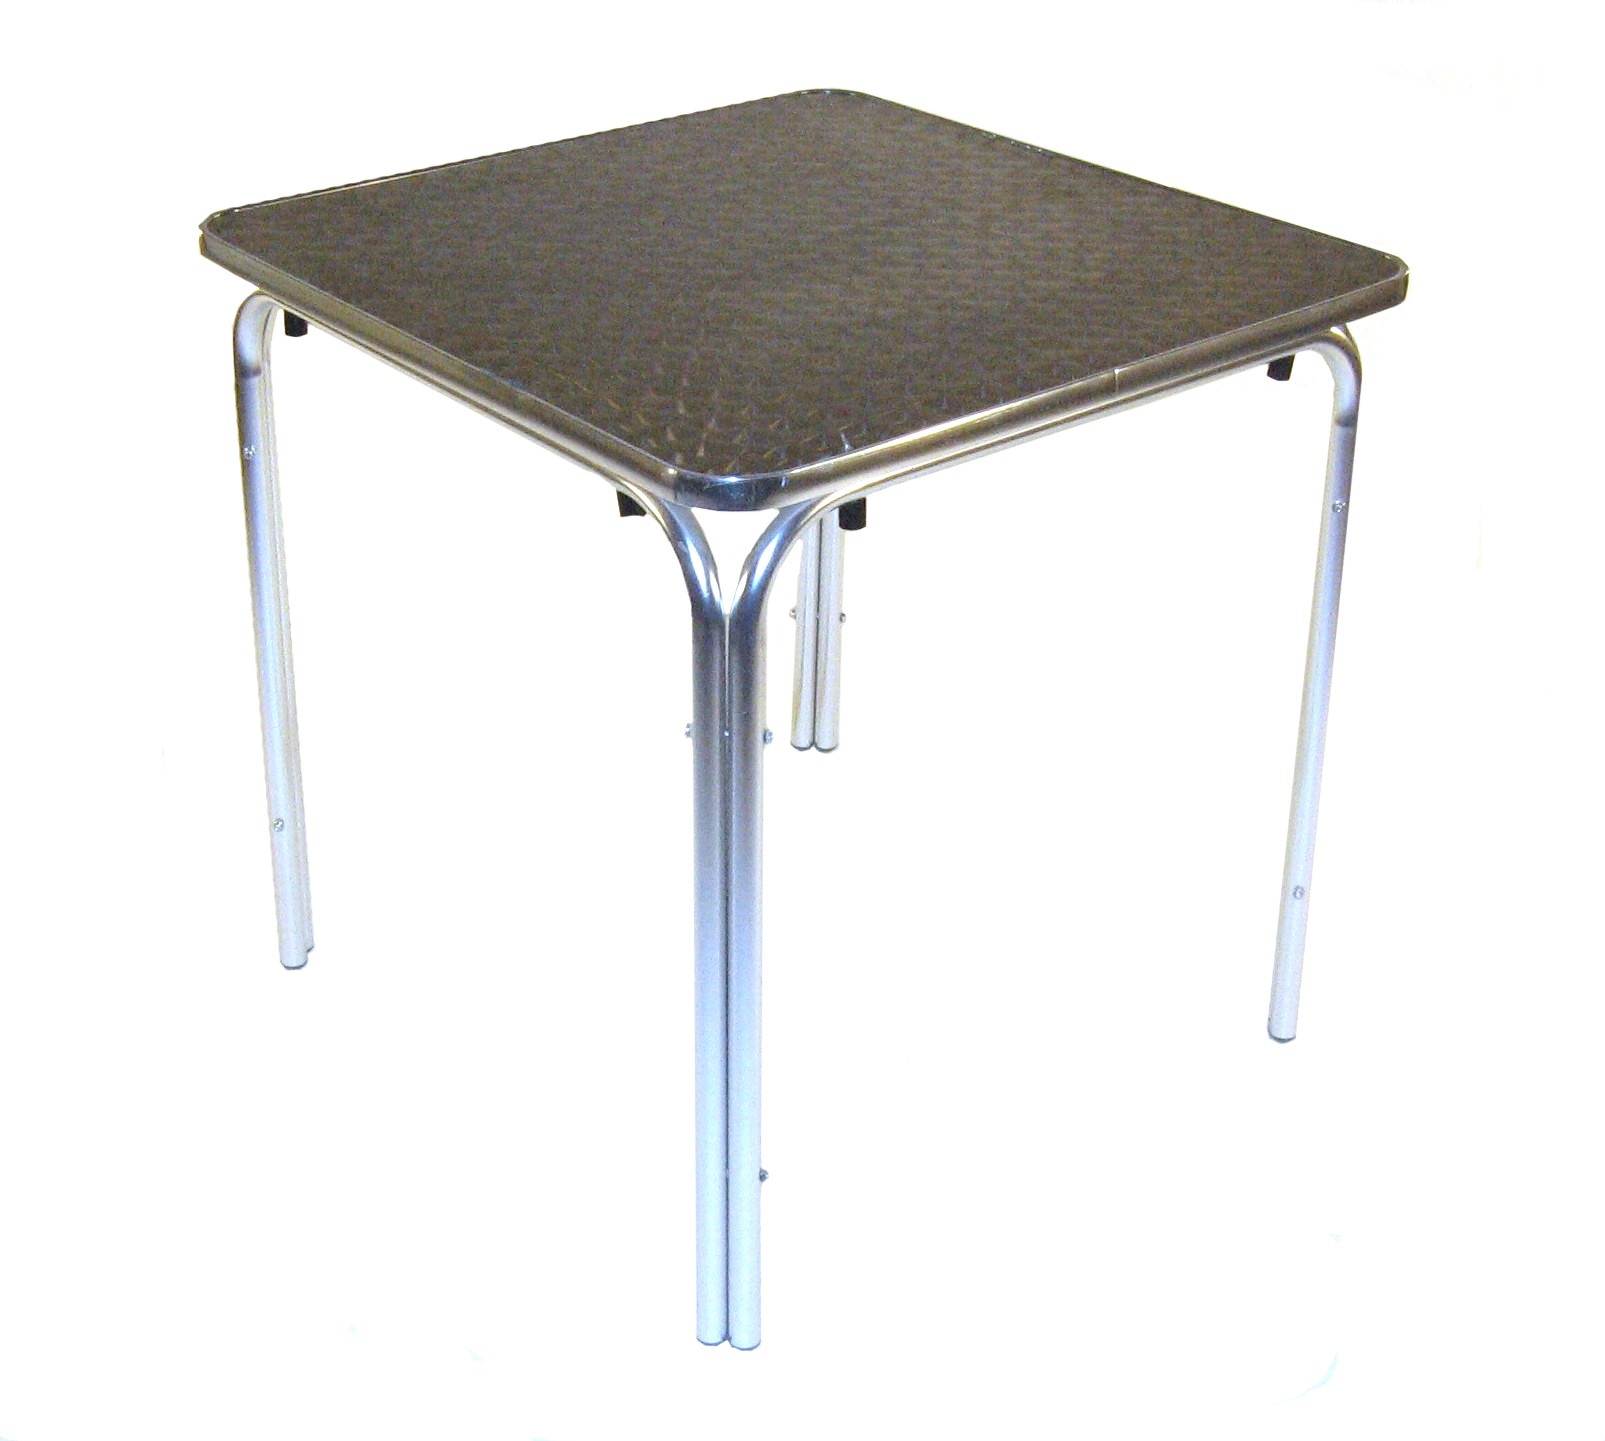 Aluminium square table